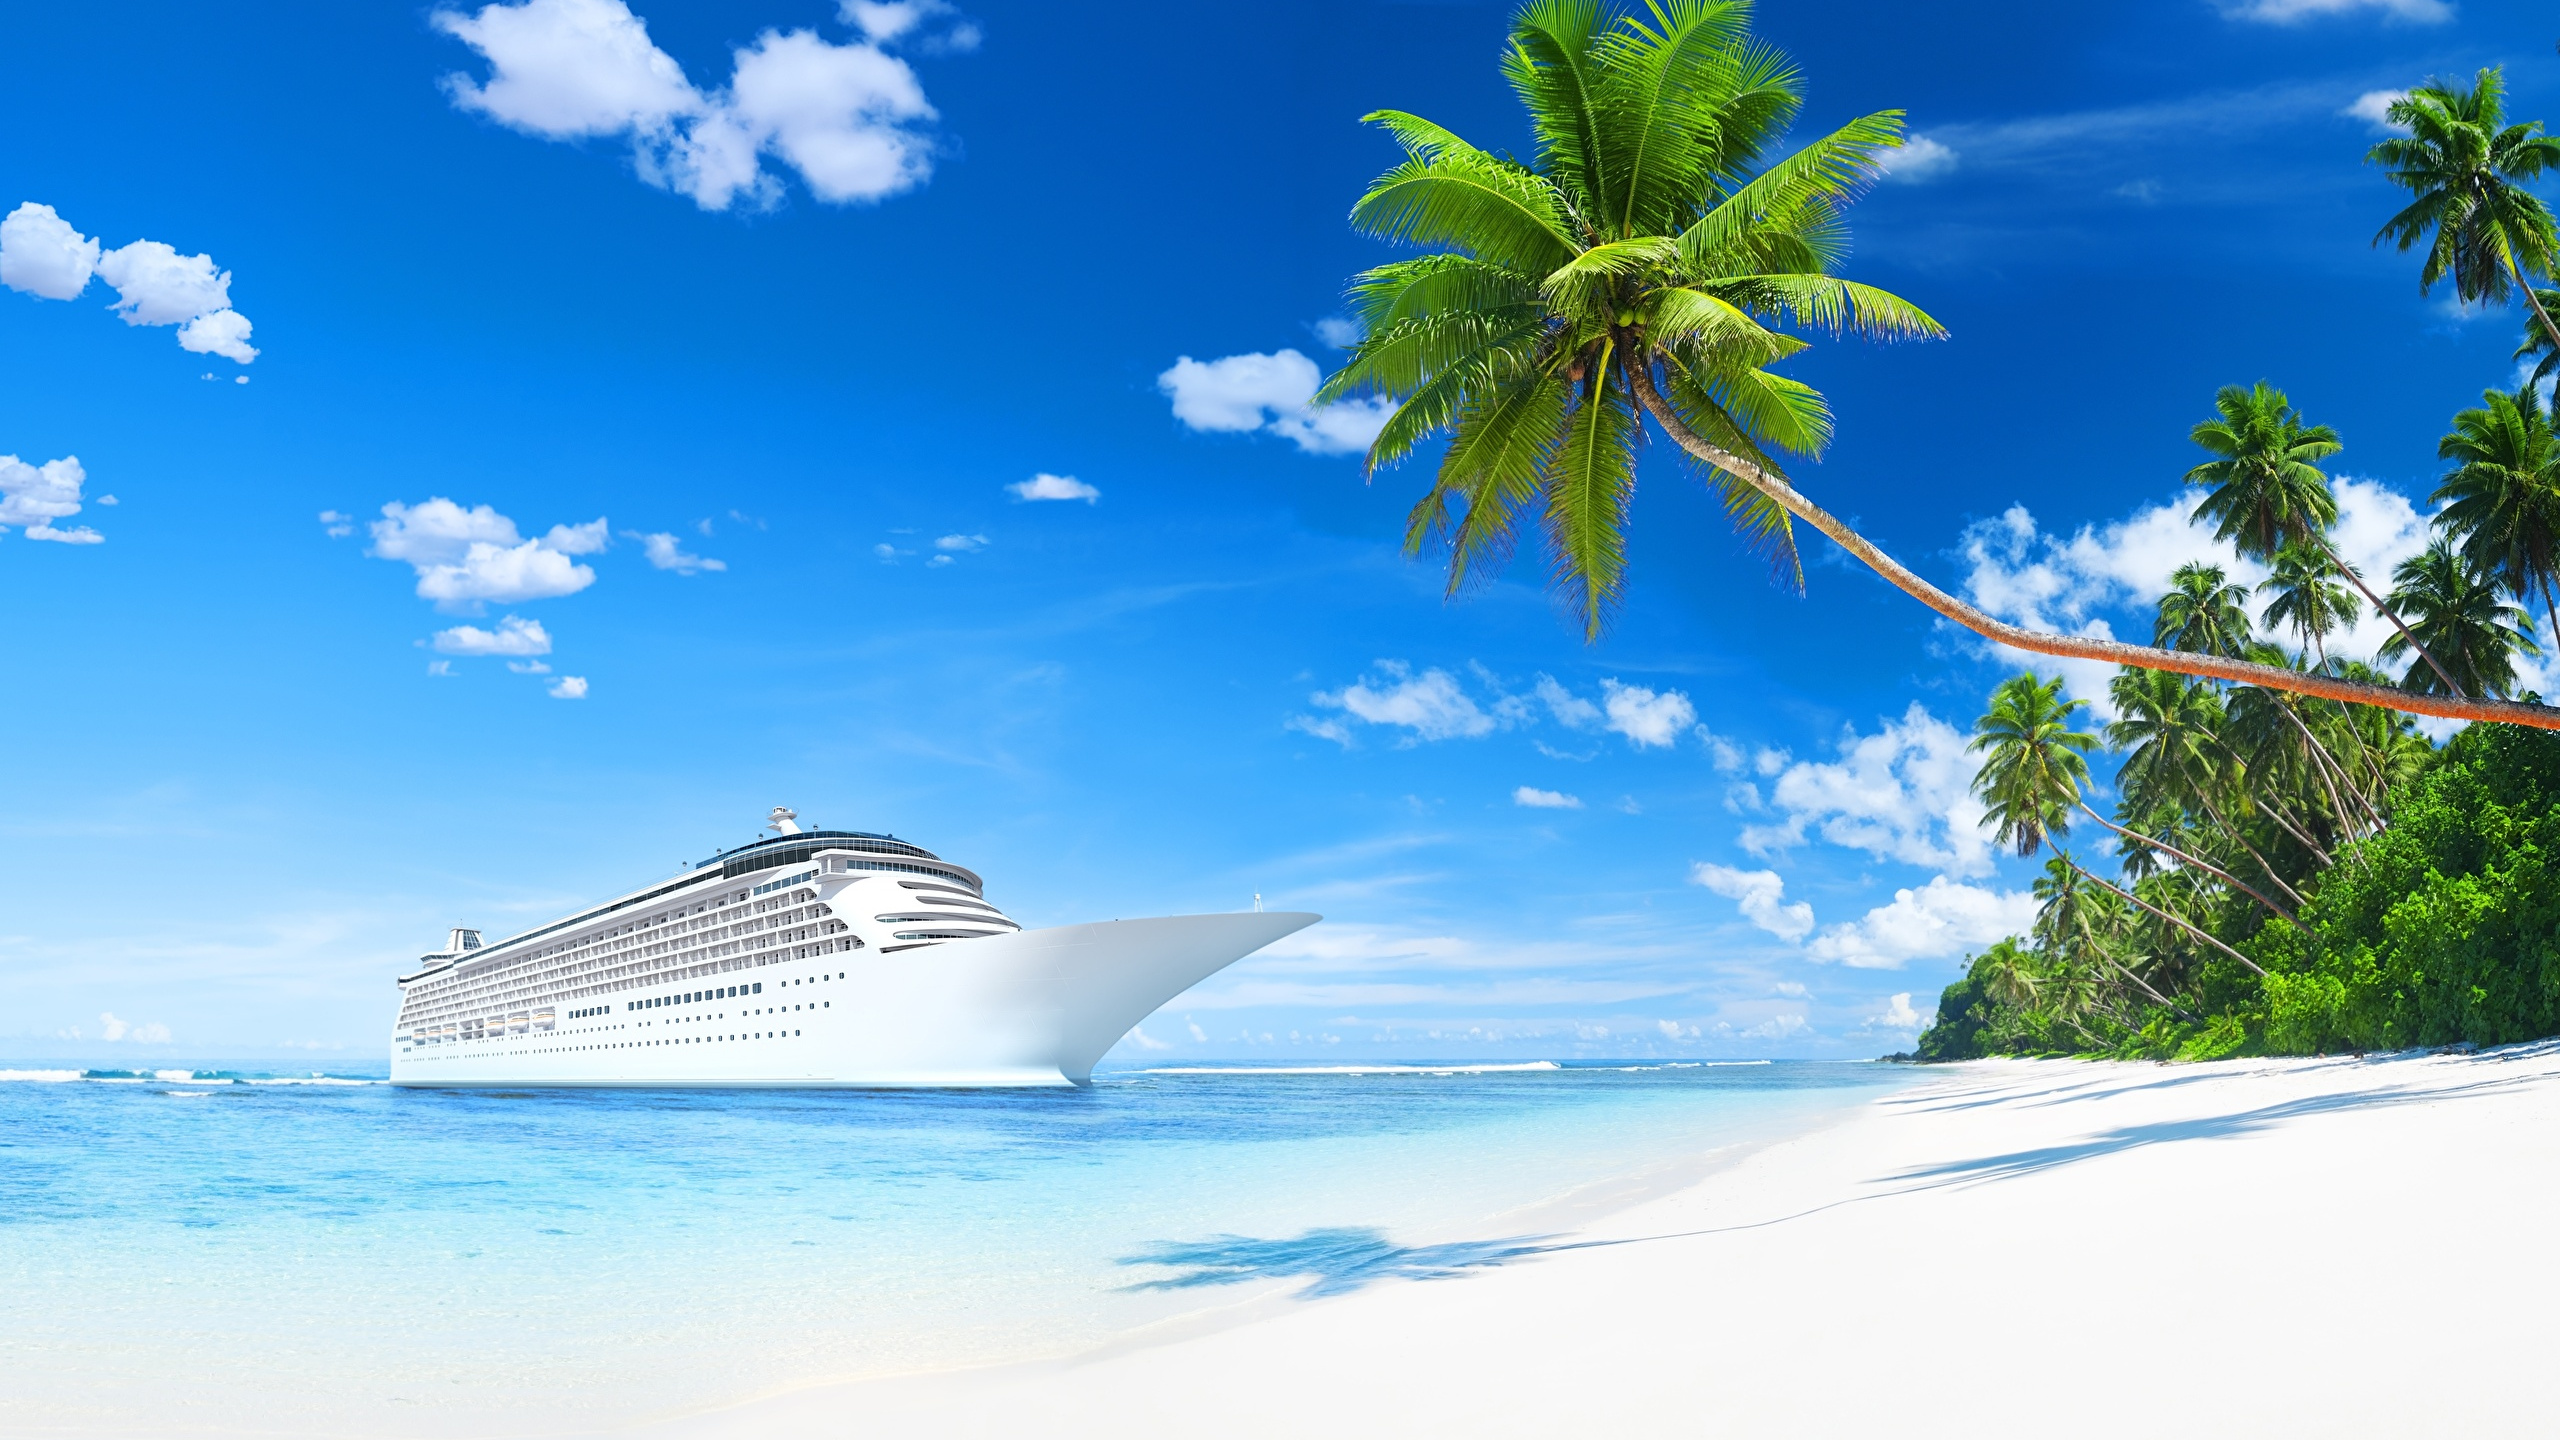 游船, 加勒比, 热带地区, 度假, 旅游业 壁纸 2560x1440 允许